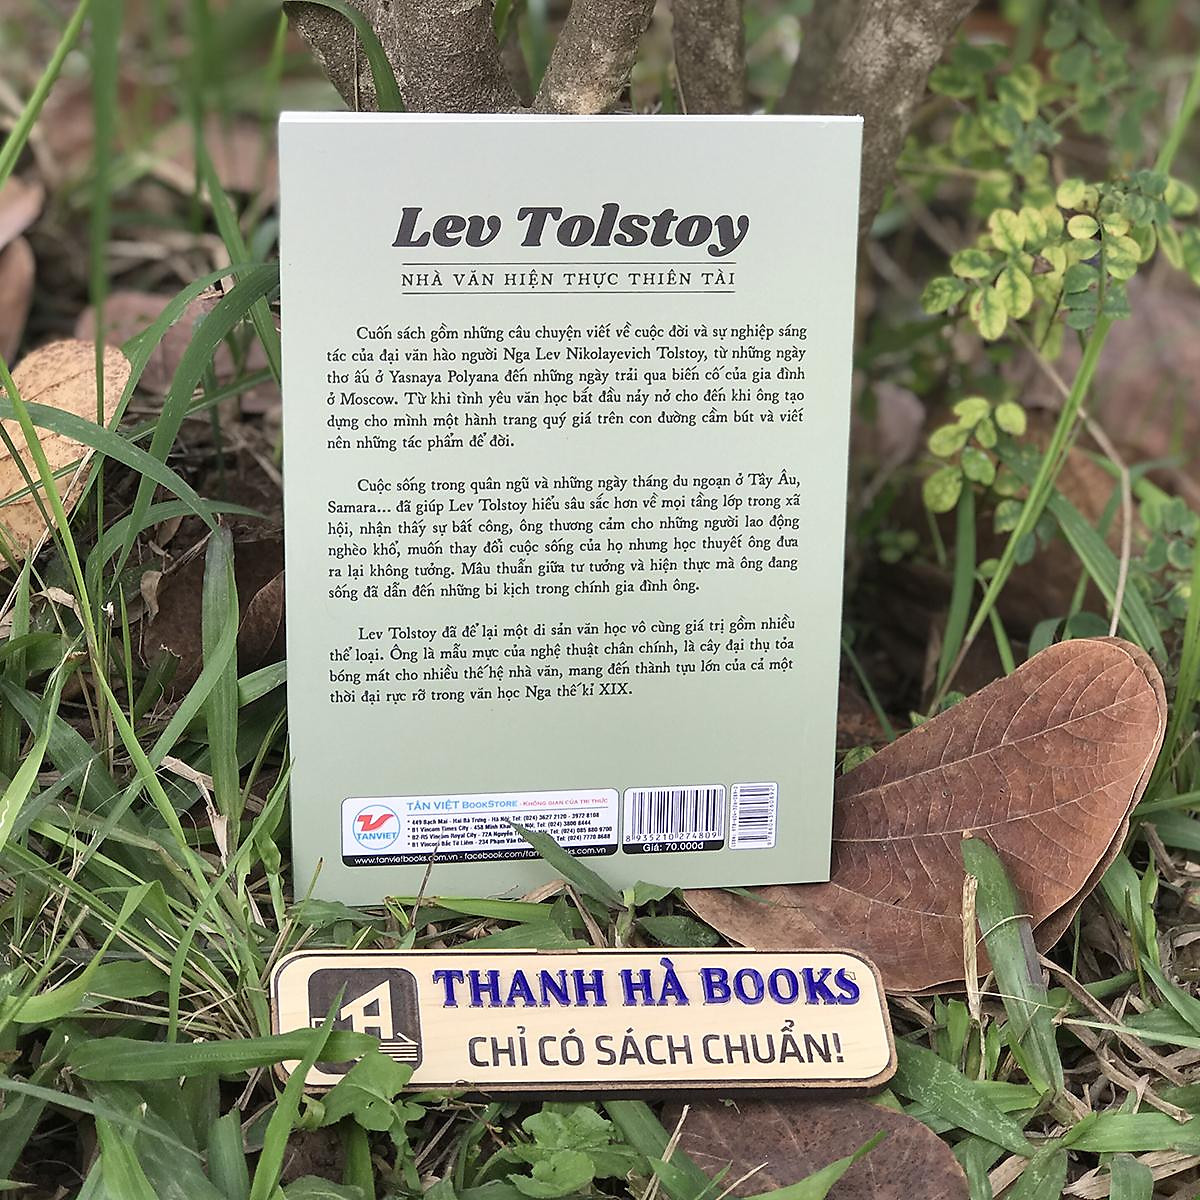 Sách Kể Chuyện Cuộc Đời Các Thiên Tài: Lev Tolstoy - Nhà Văn Hiện Thực Thiên Tài